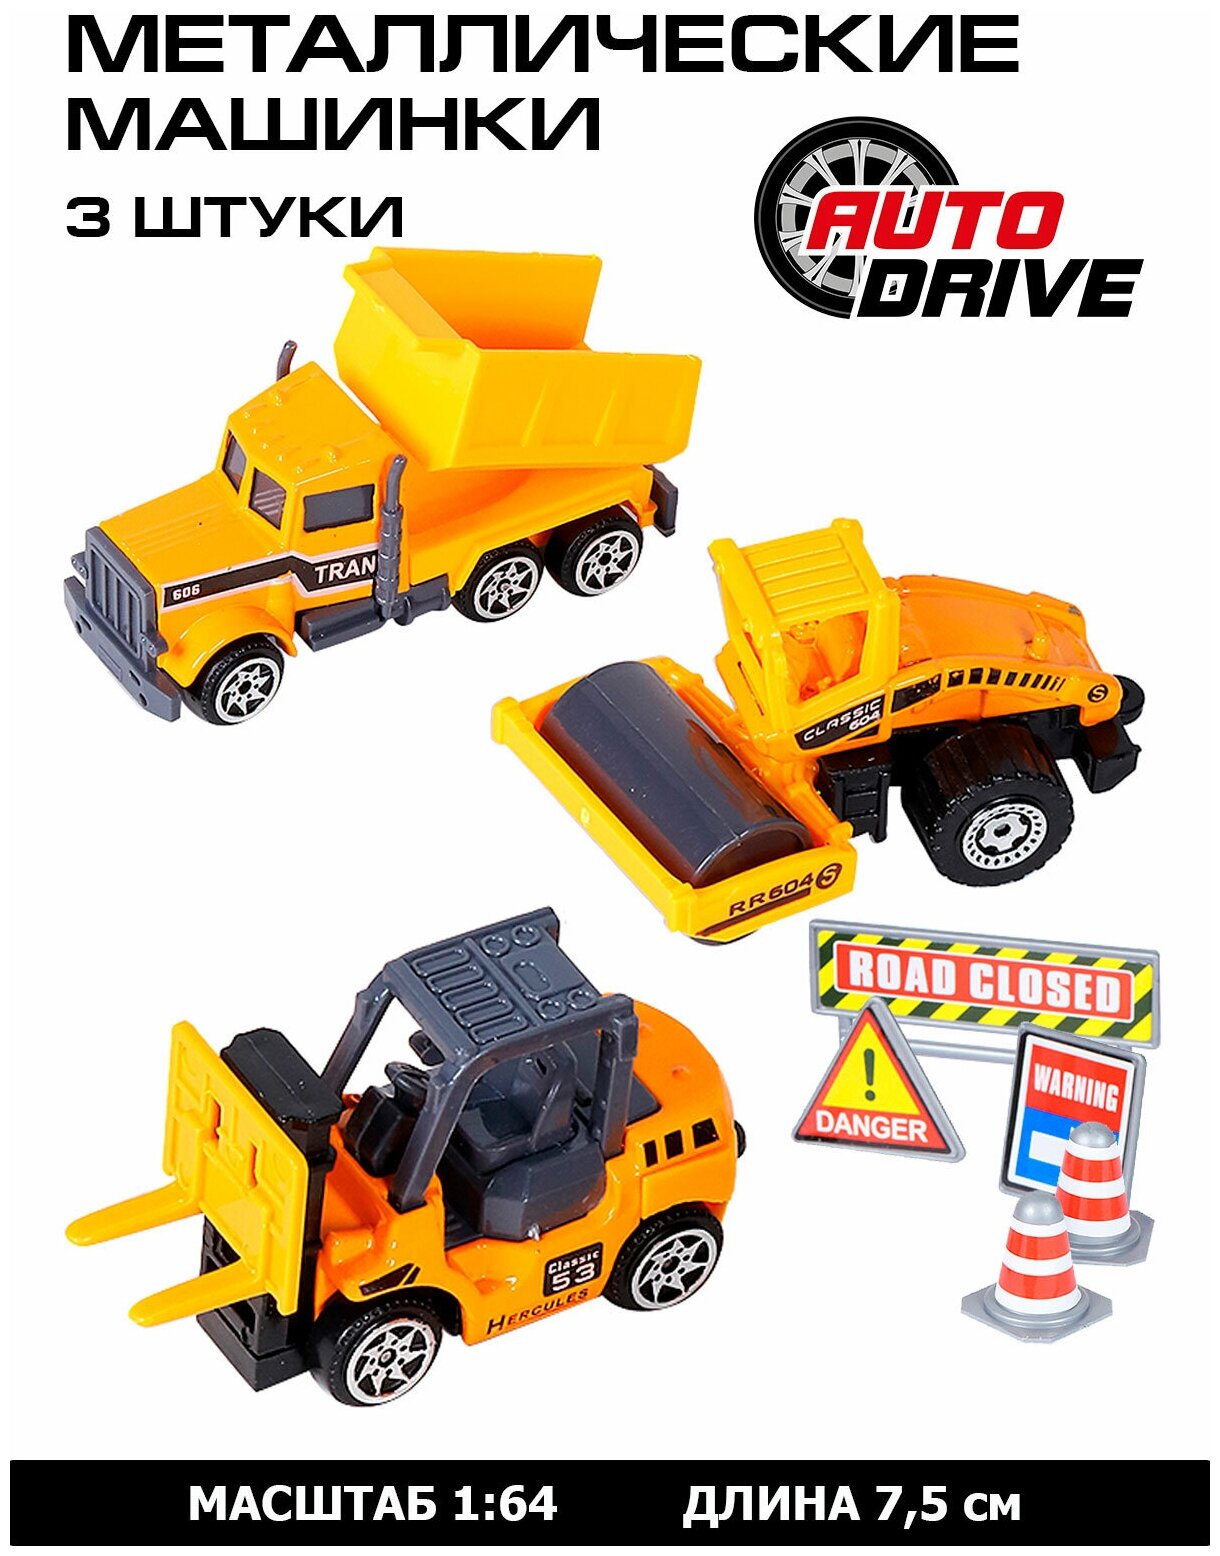 Набор металлических машинок ТМ AUTODRIVE с дорожными знаками 3 машинки строительная техника спецтранспорт для детей для мальчиков М1:64 желтый